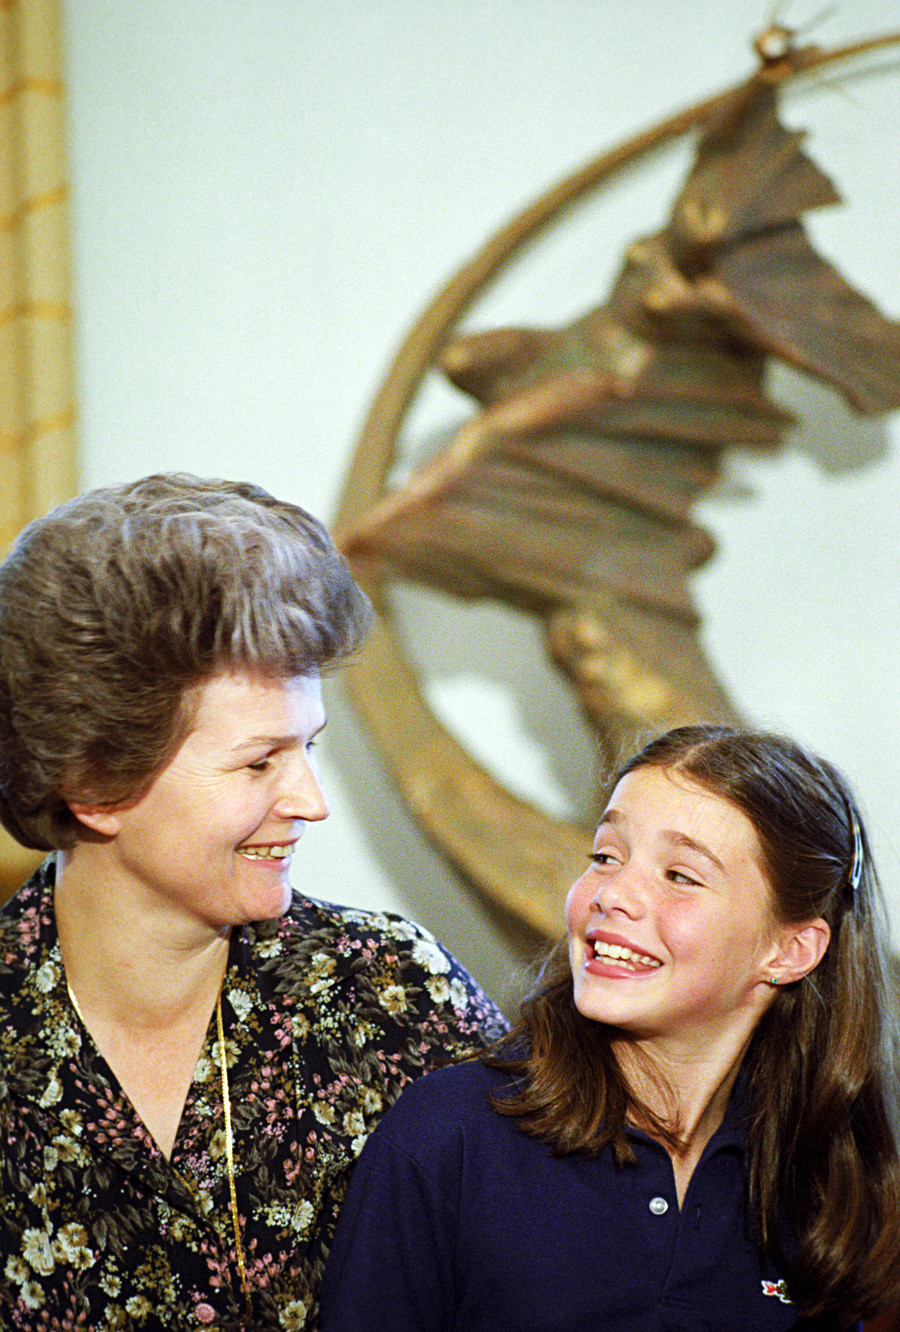 Moscou, URSS. A estudante americana e ativista da paz Samantha Smith (dir.) com a primeira mulher a ir ao espaço, Valentina Terechkova.